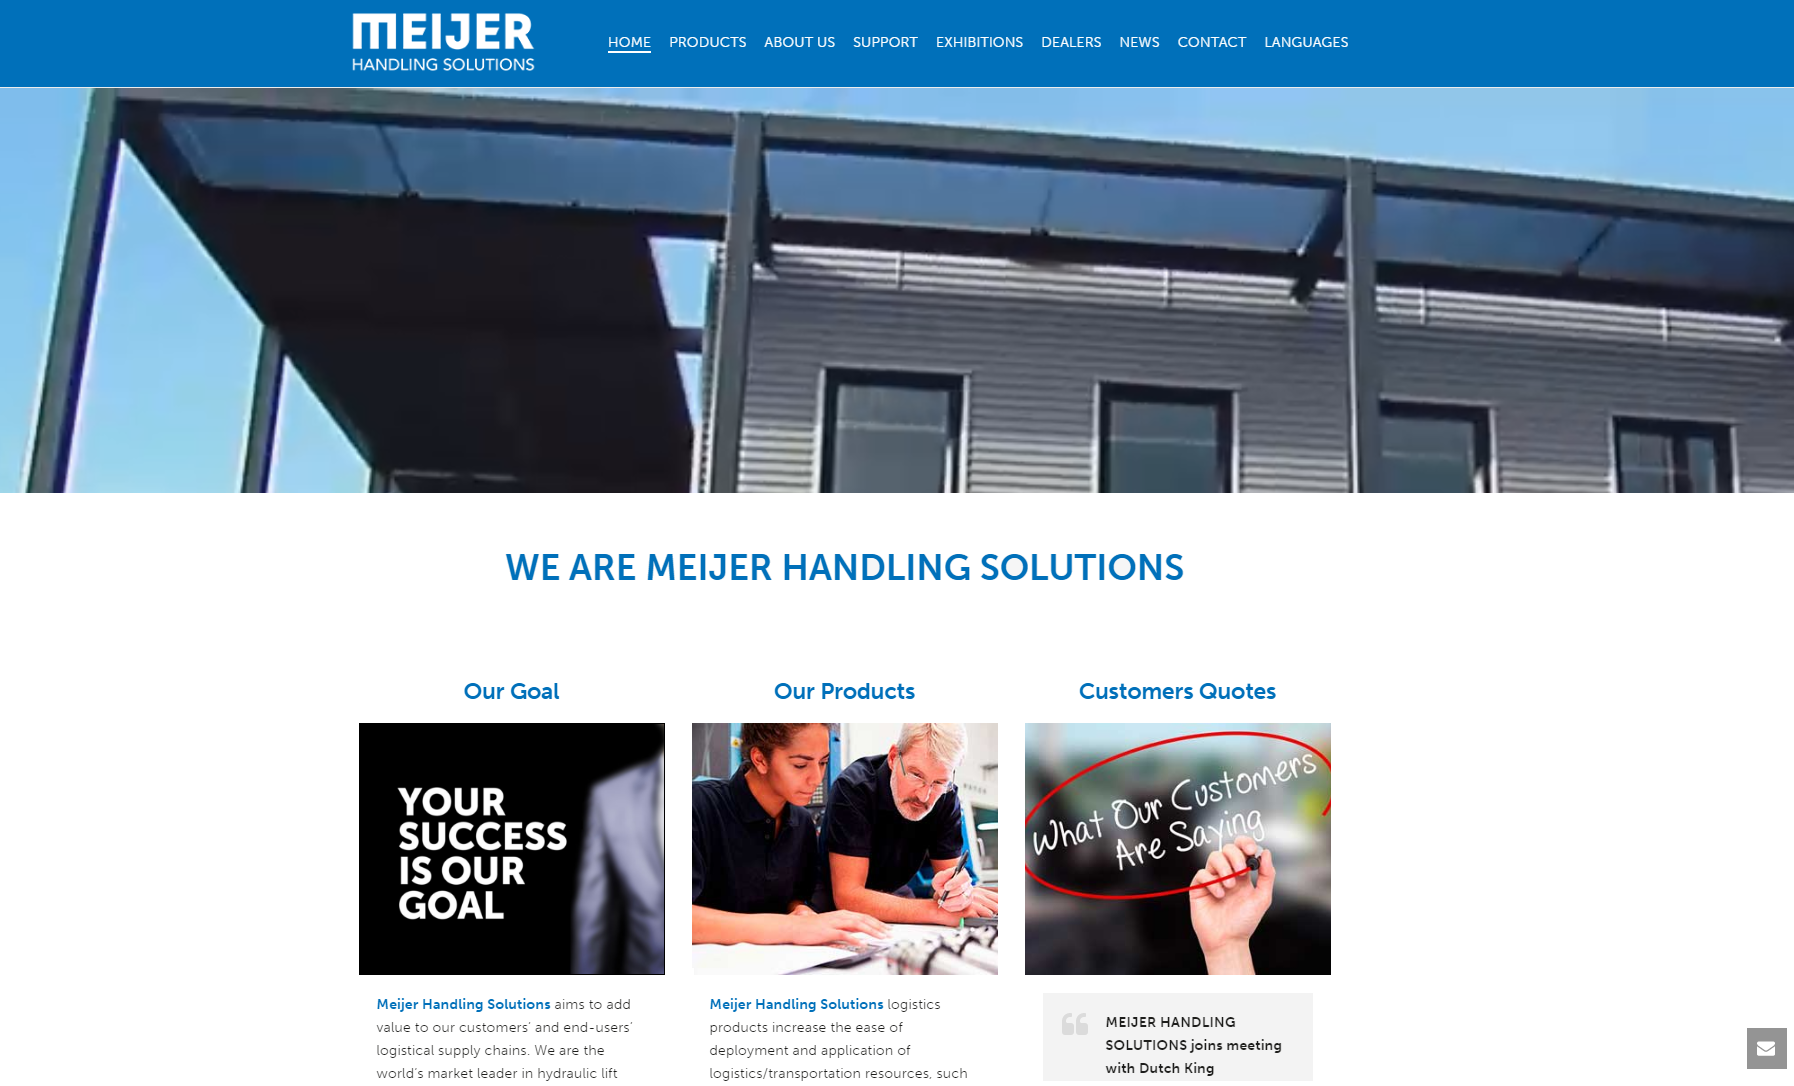 Meijer-Handling-Solutions producer of the extenadble forklift fork so-called KOOI-ReachForks